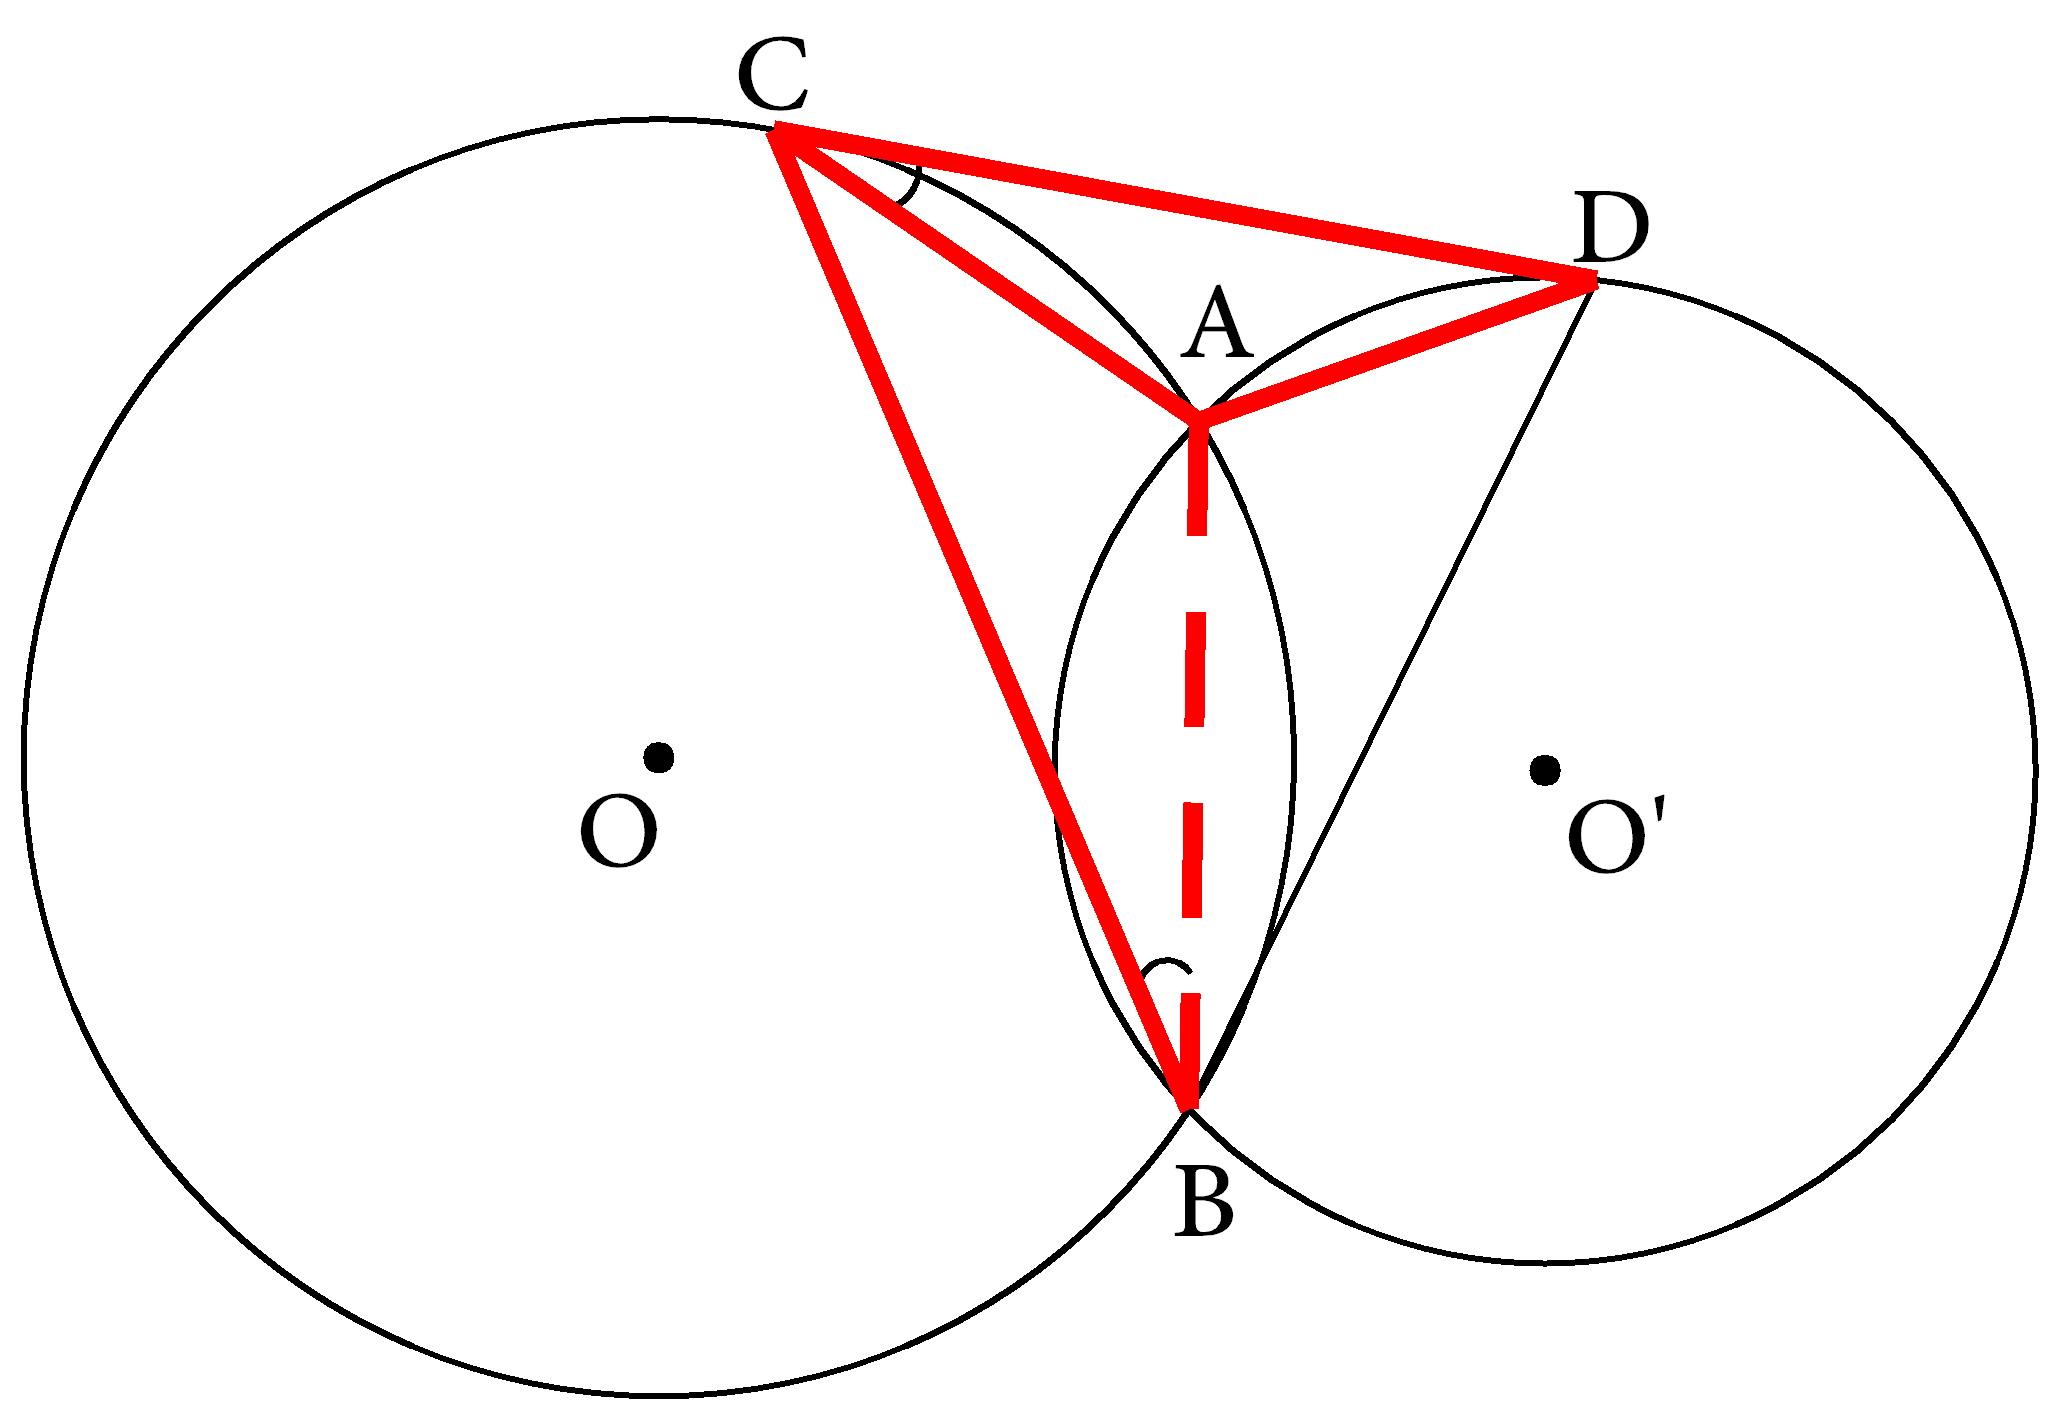 基本图形分析法:弦切角问题怎样思考(九)